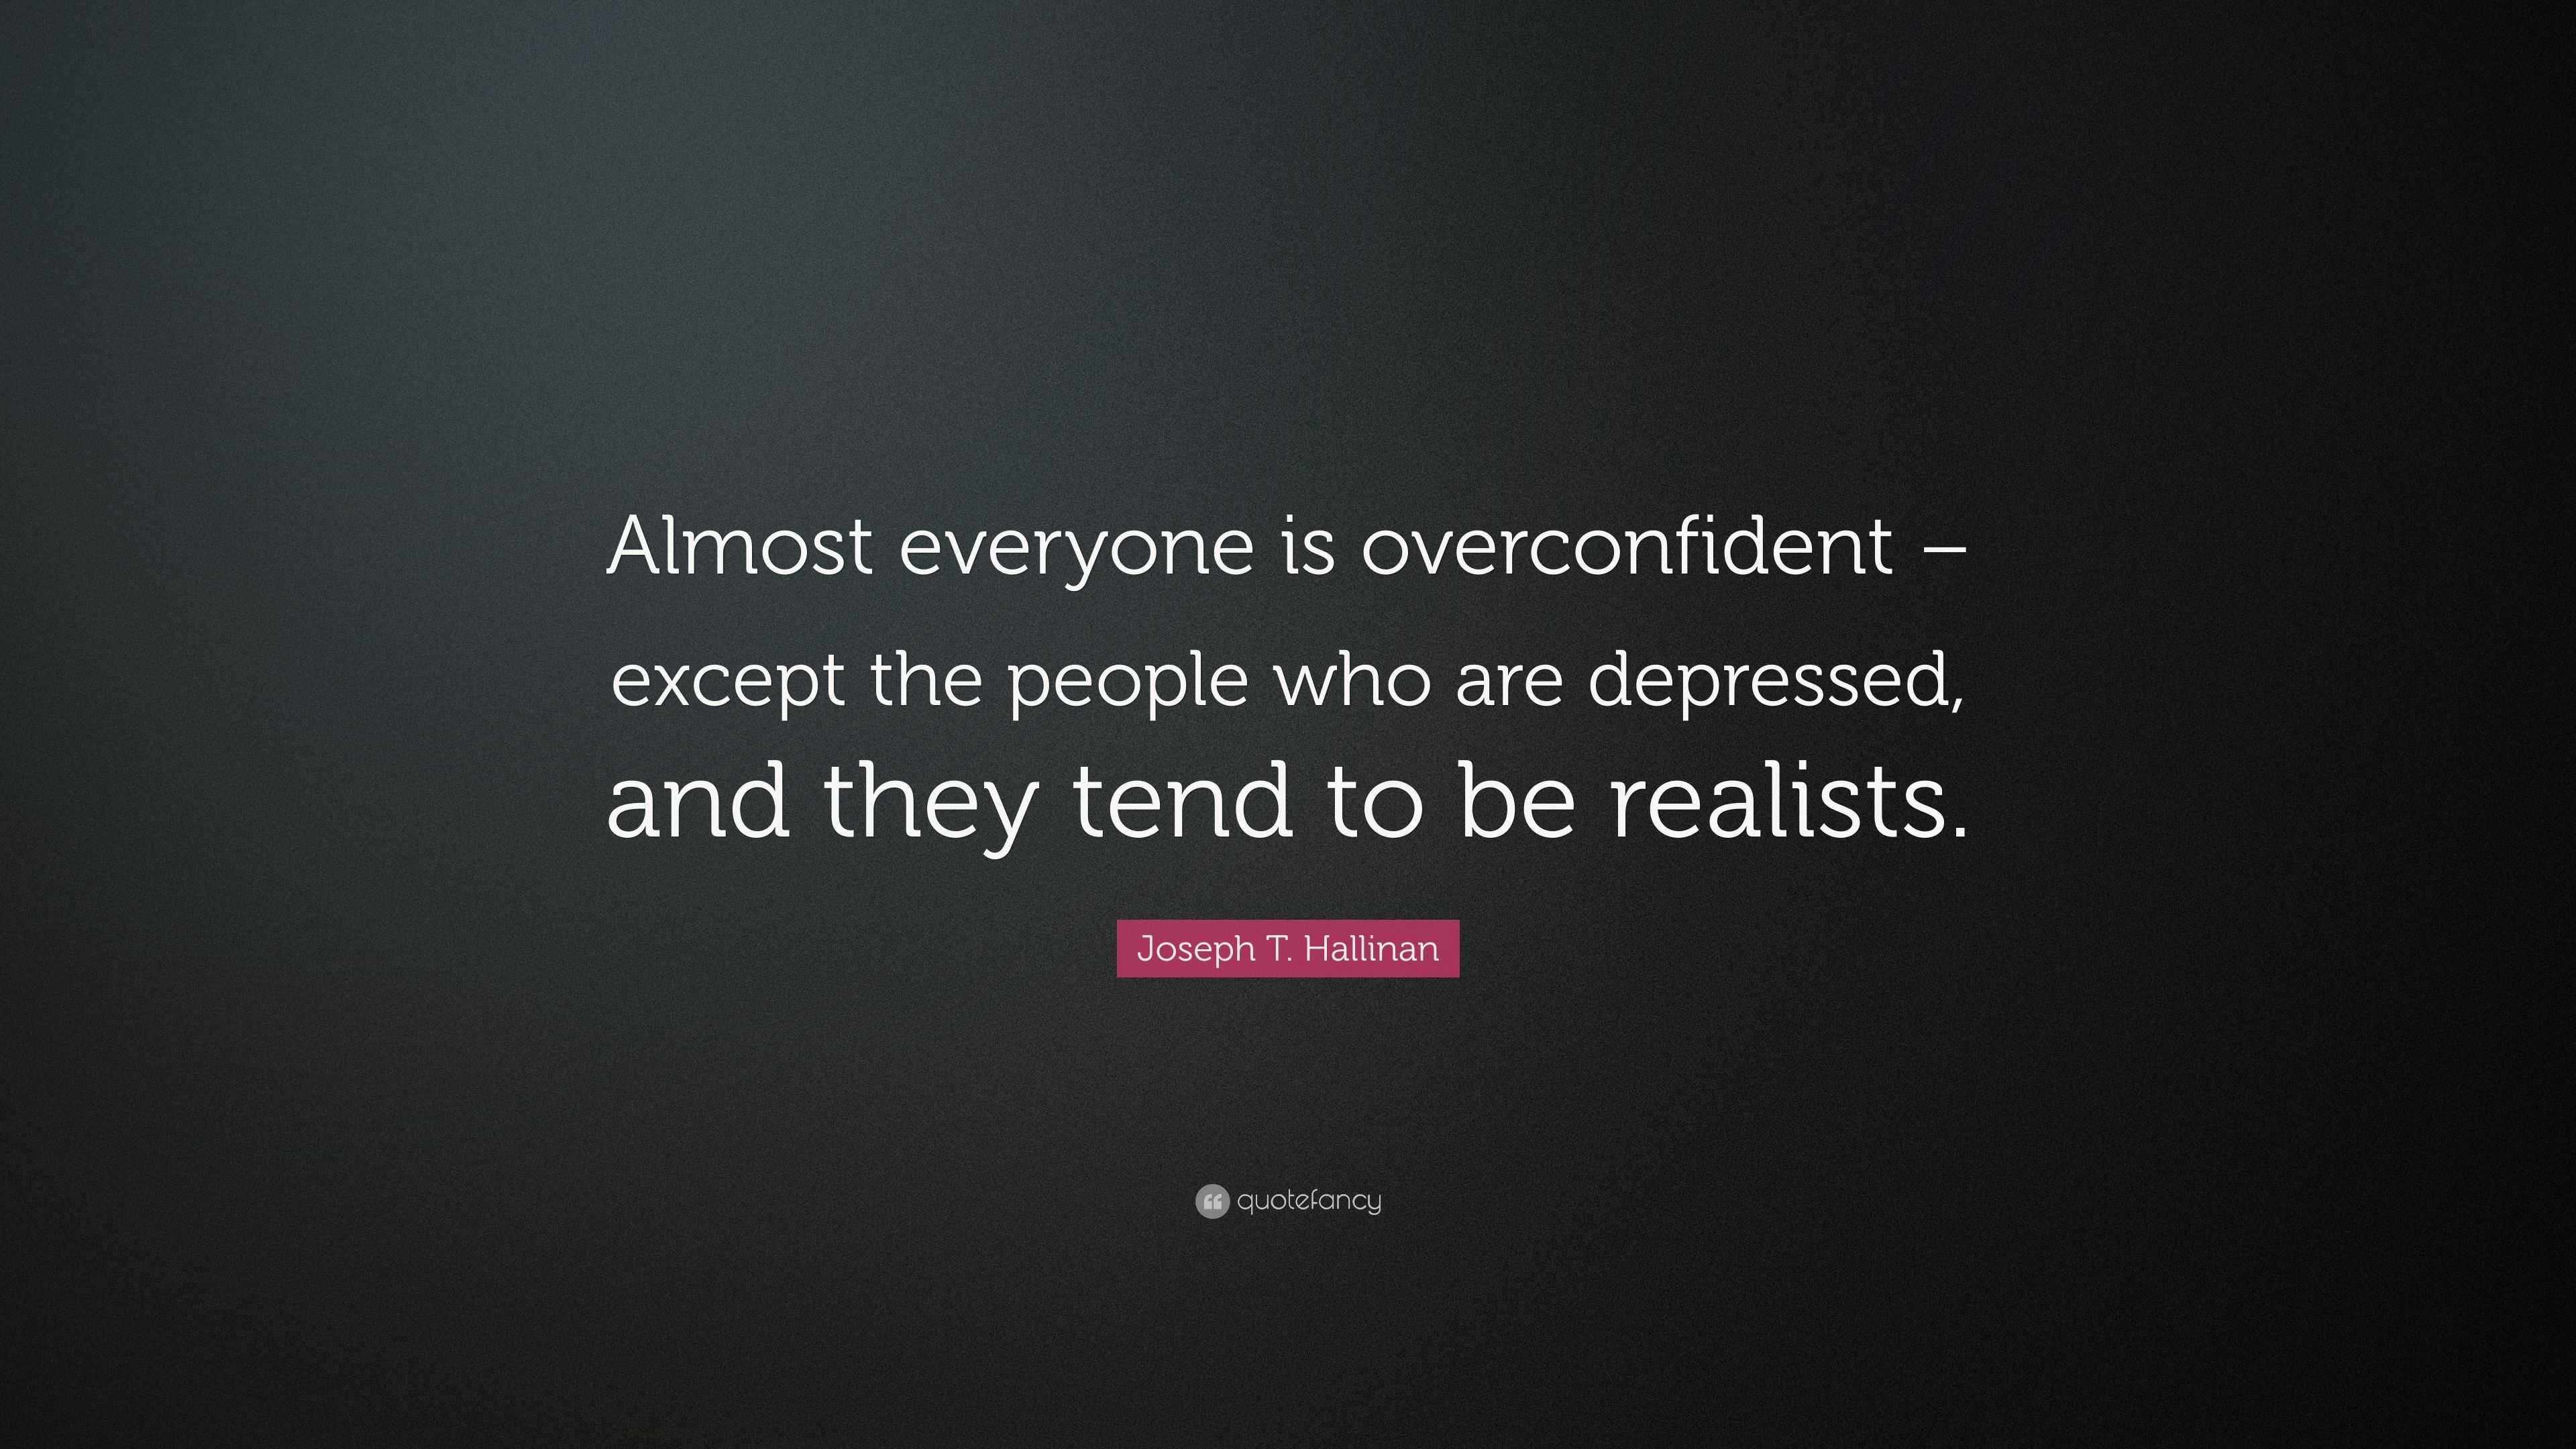 Joseph T. Hallinan Quote: “Almost everyone is overconfident – except ...